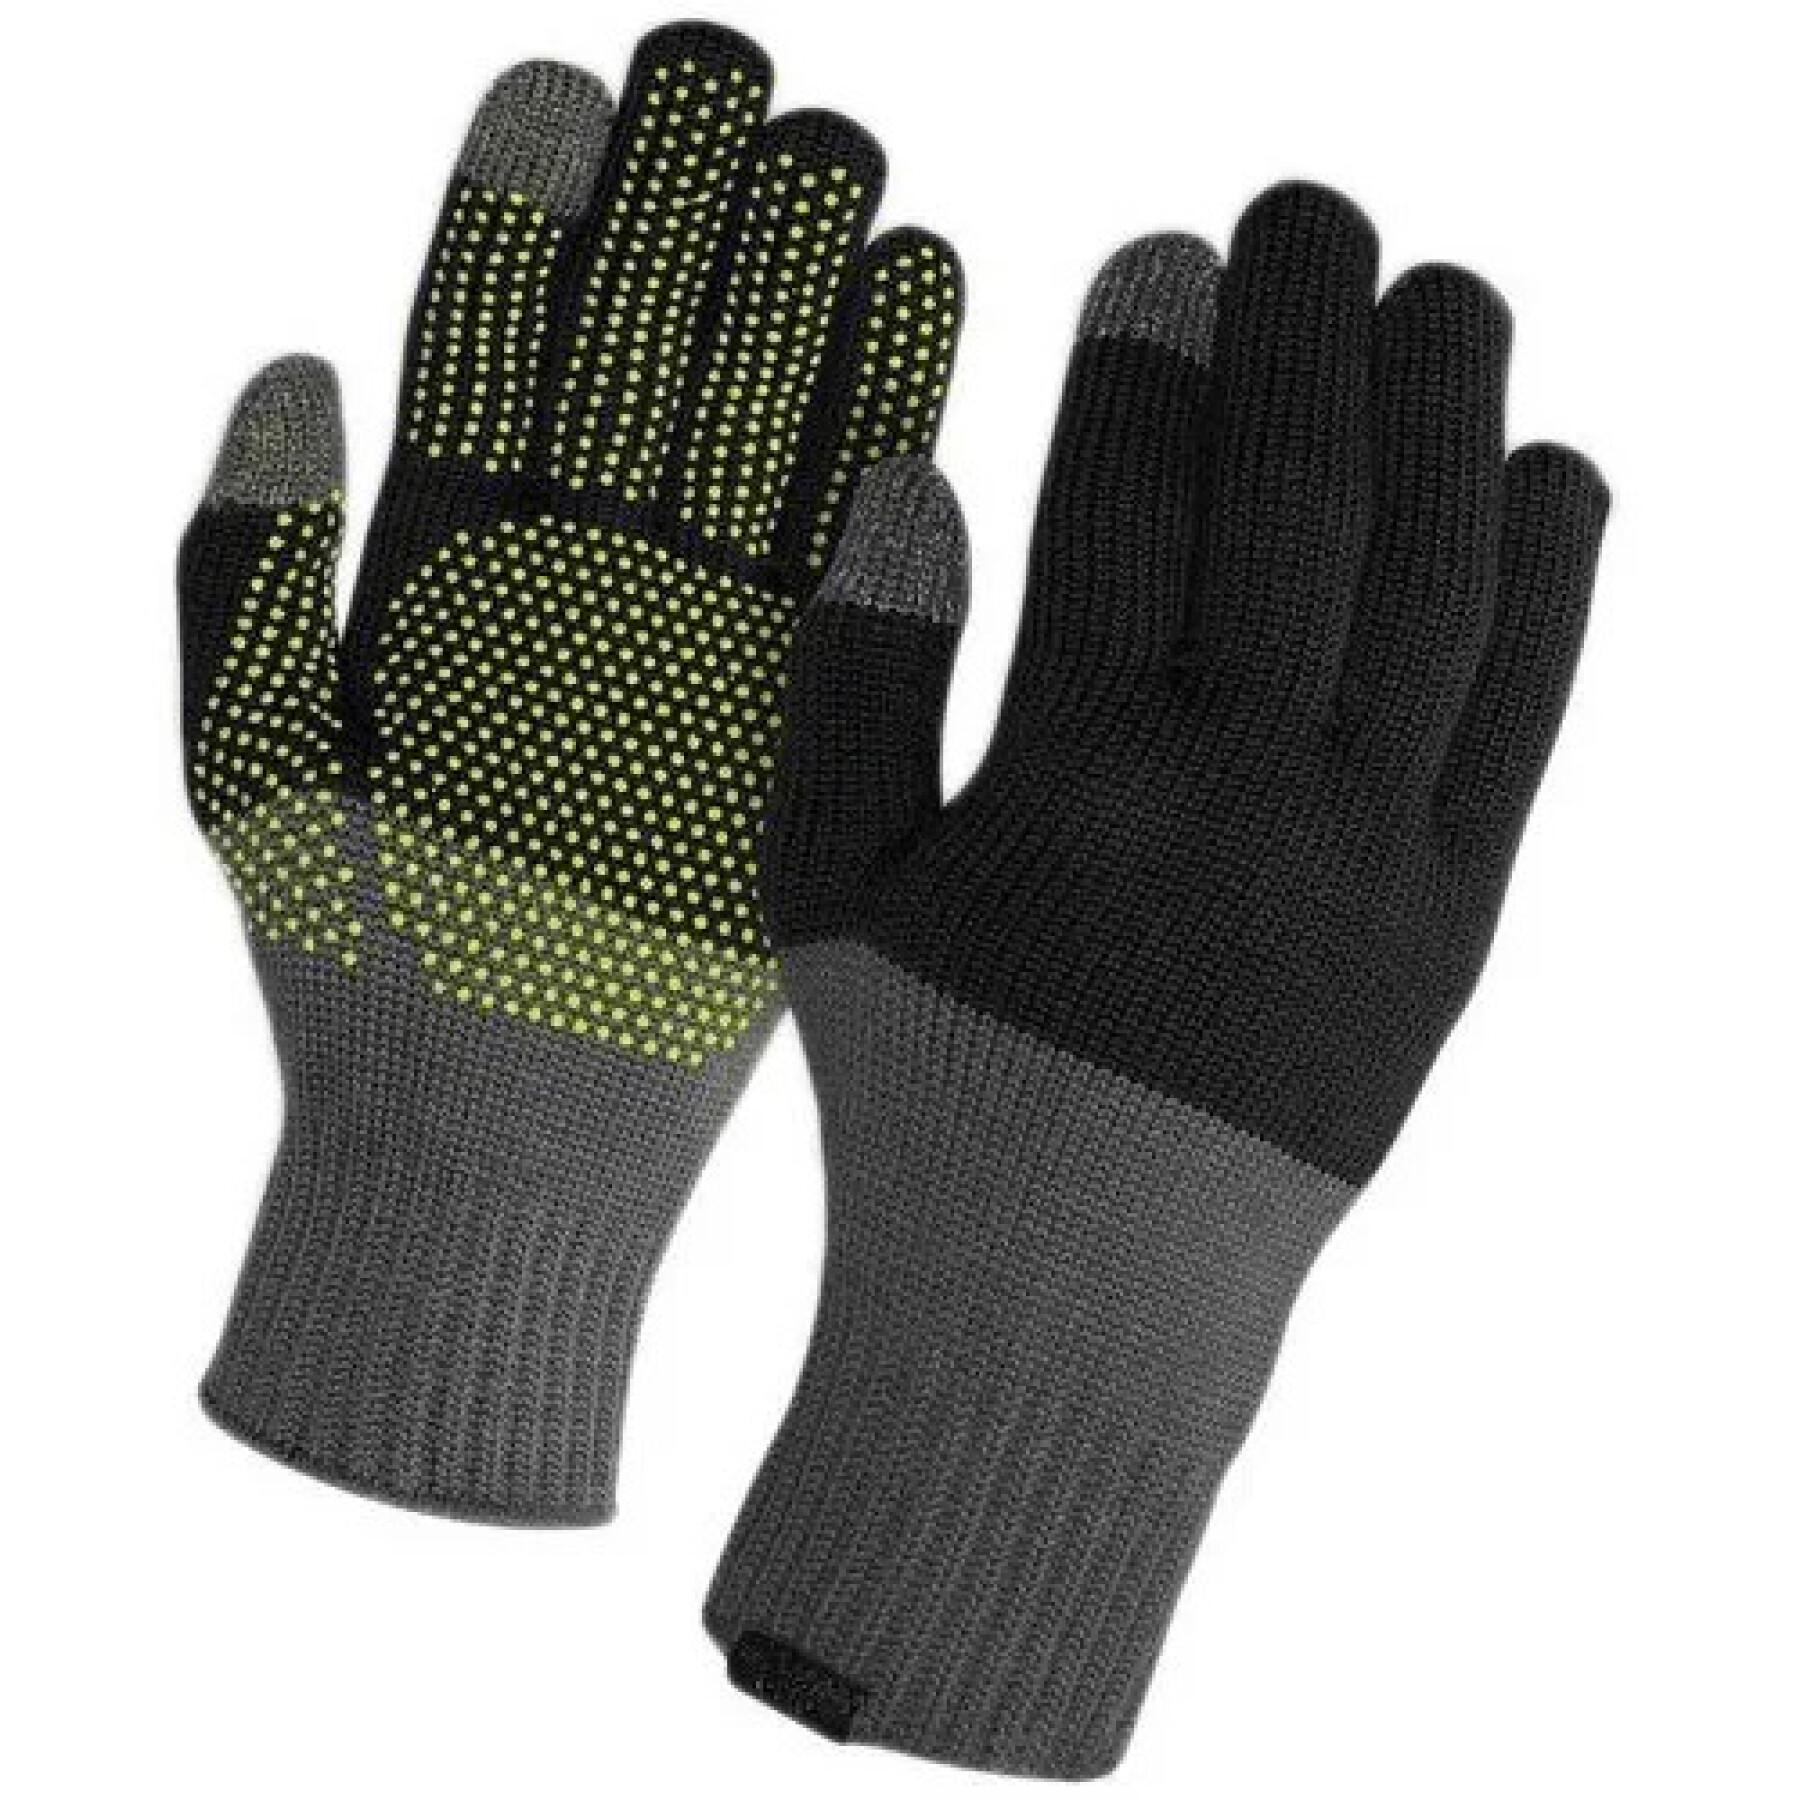 Handschuhe Giro Knit Merino Wool